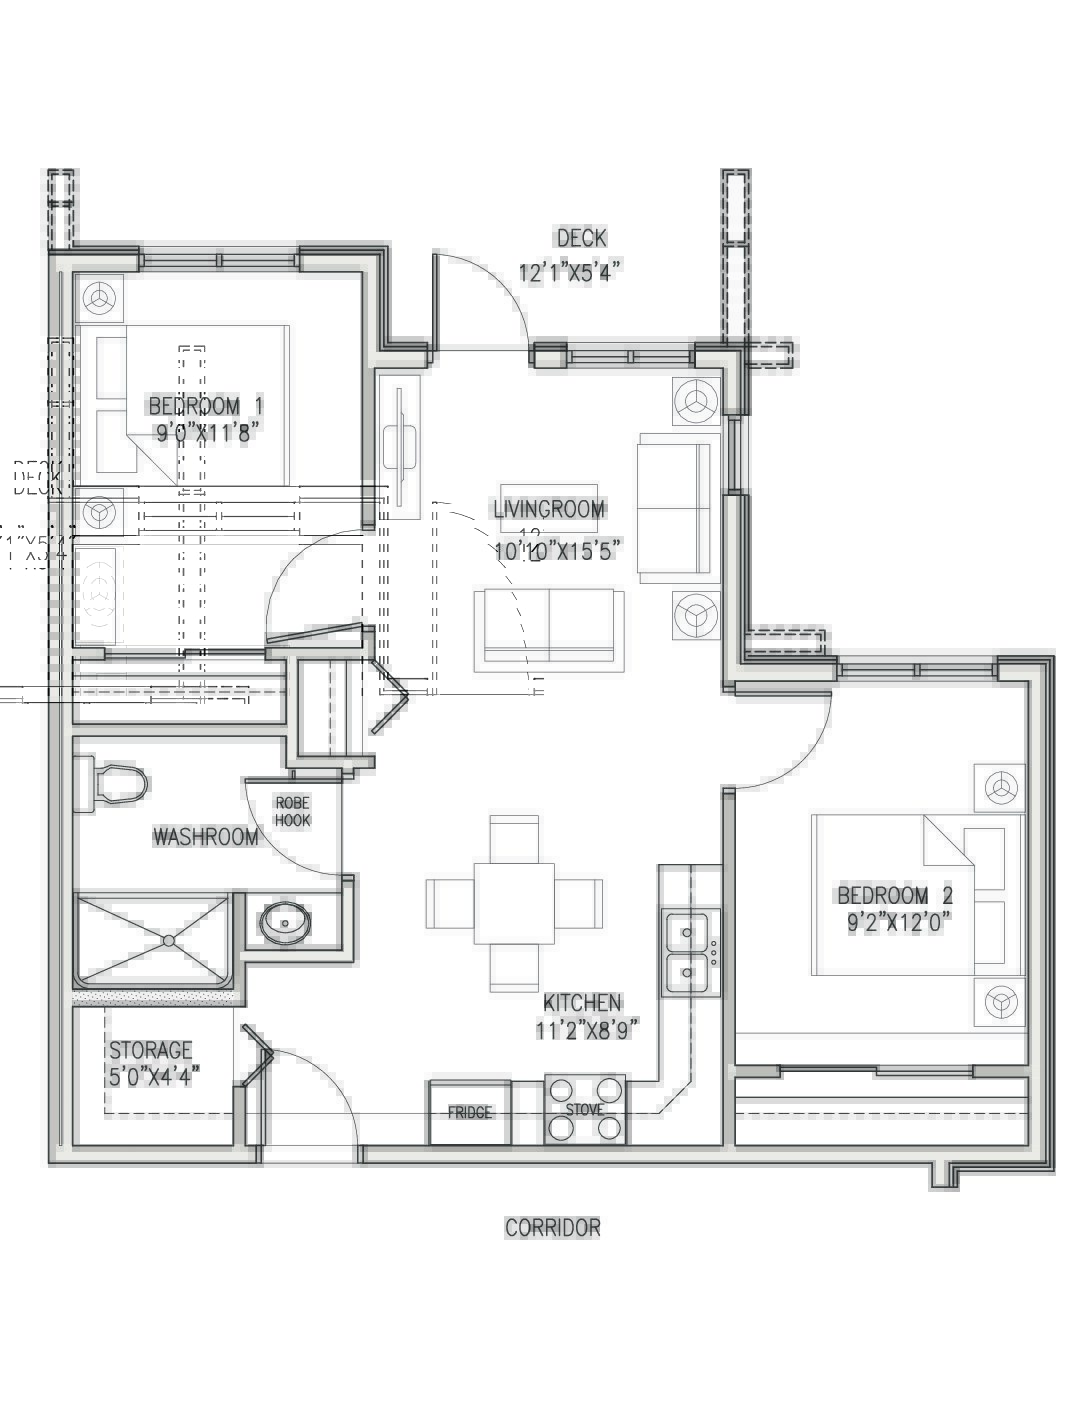 View or Print PDF of 2 Bedroom floor plan in new tab